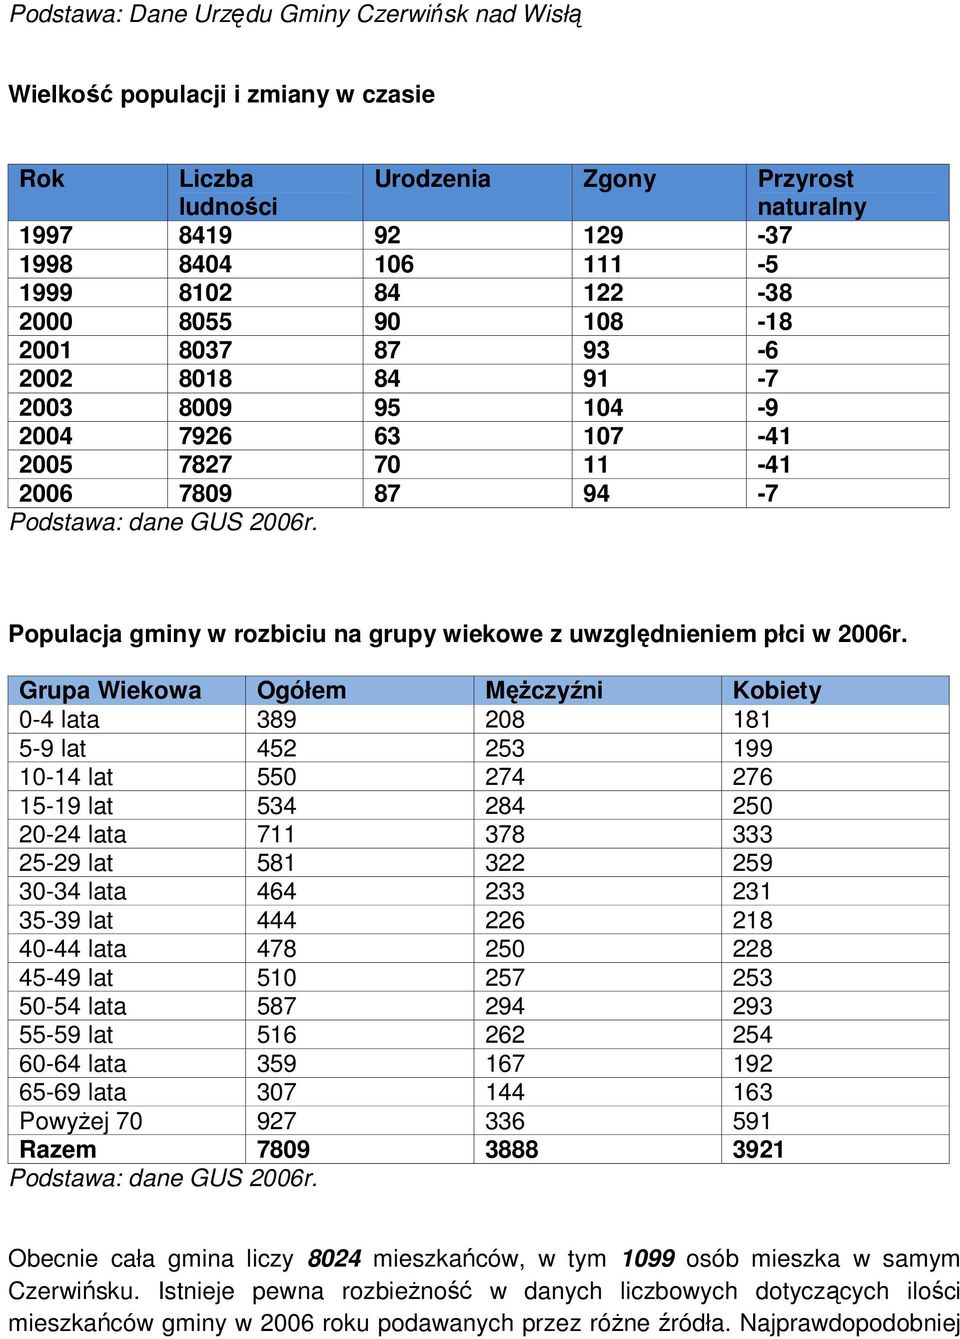 Populacja gminy w rozbiciu na grupy wiekowe z uwzględnieniem płci w 2006r.